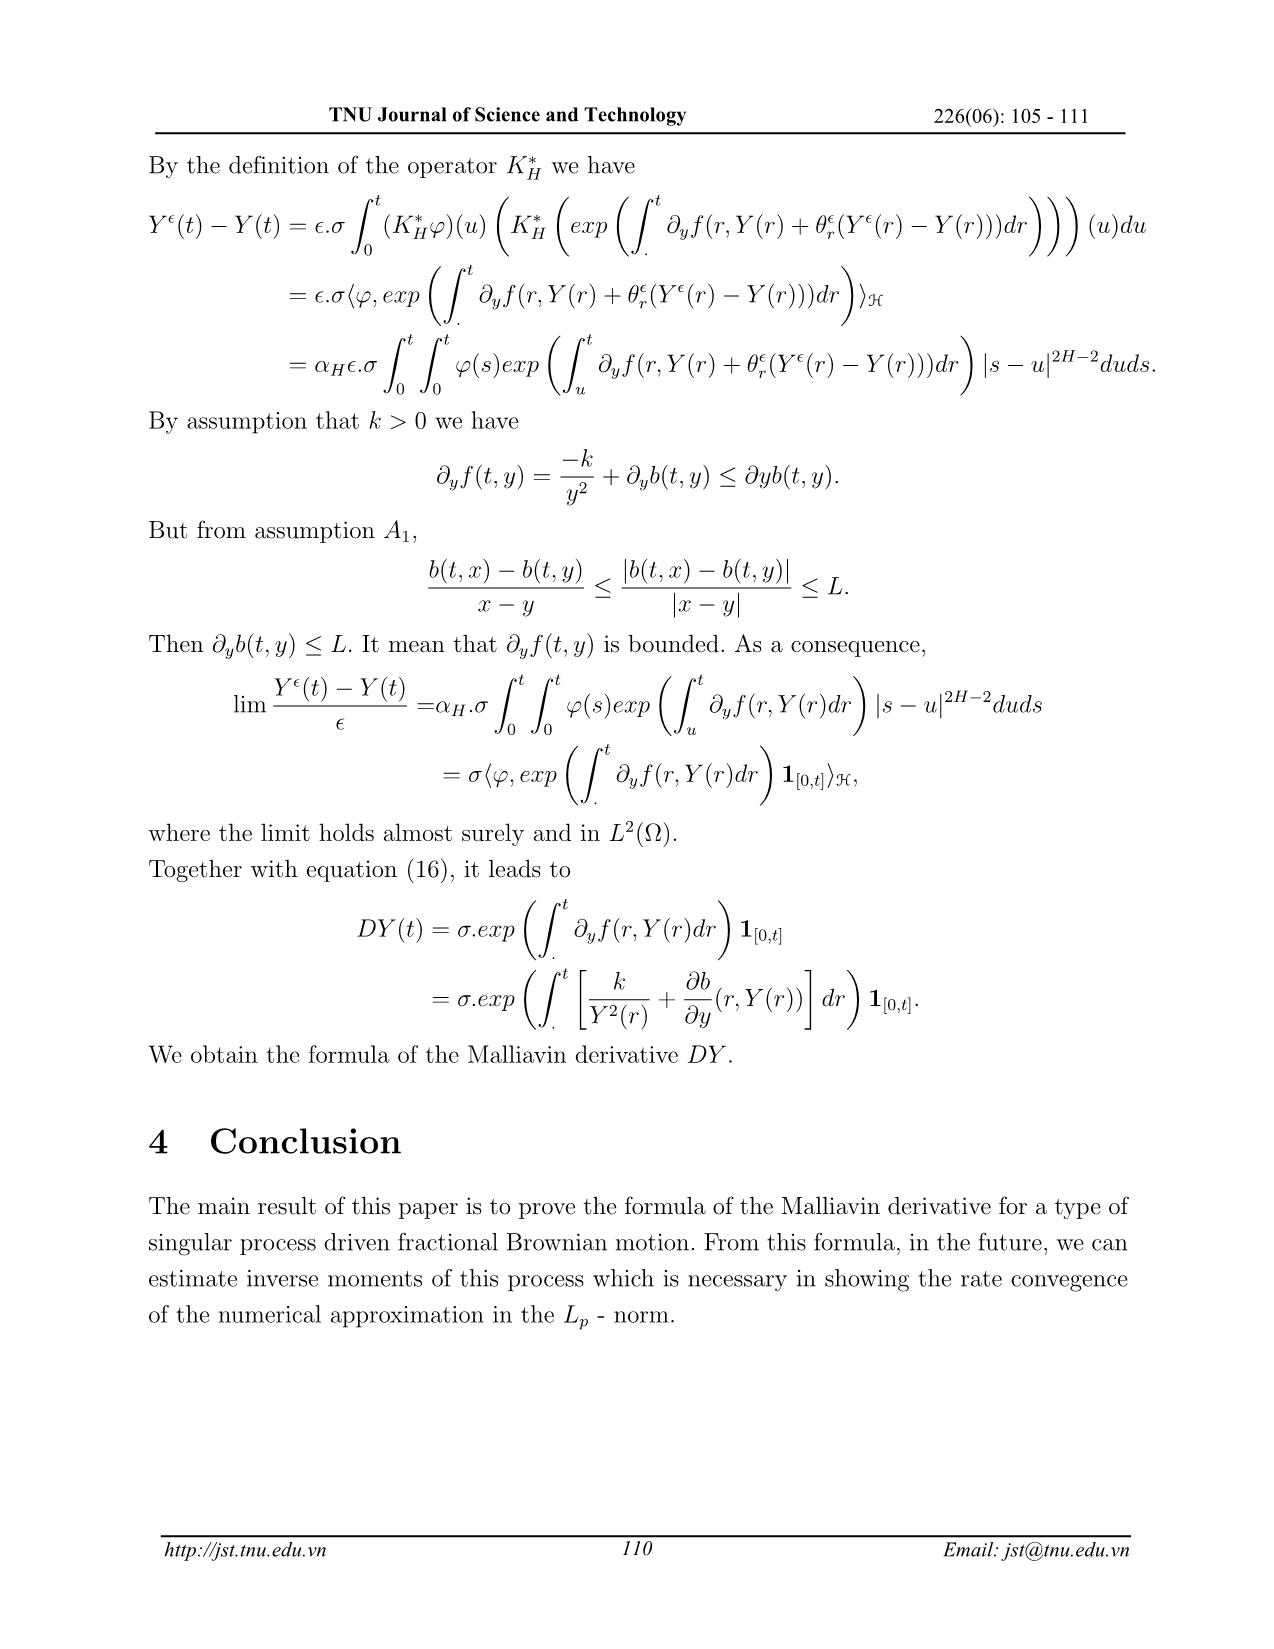 Đạo hàm Malliavin của quá trình Bessel phân thứ dạng tổng quát trang 6